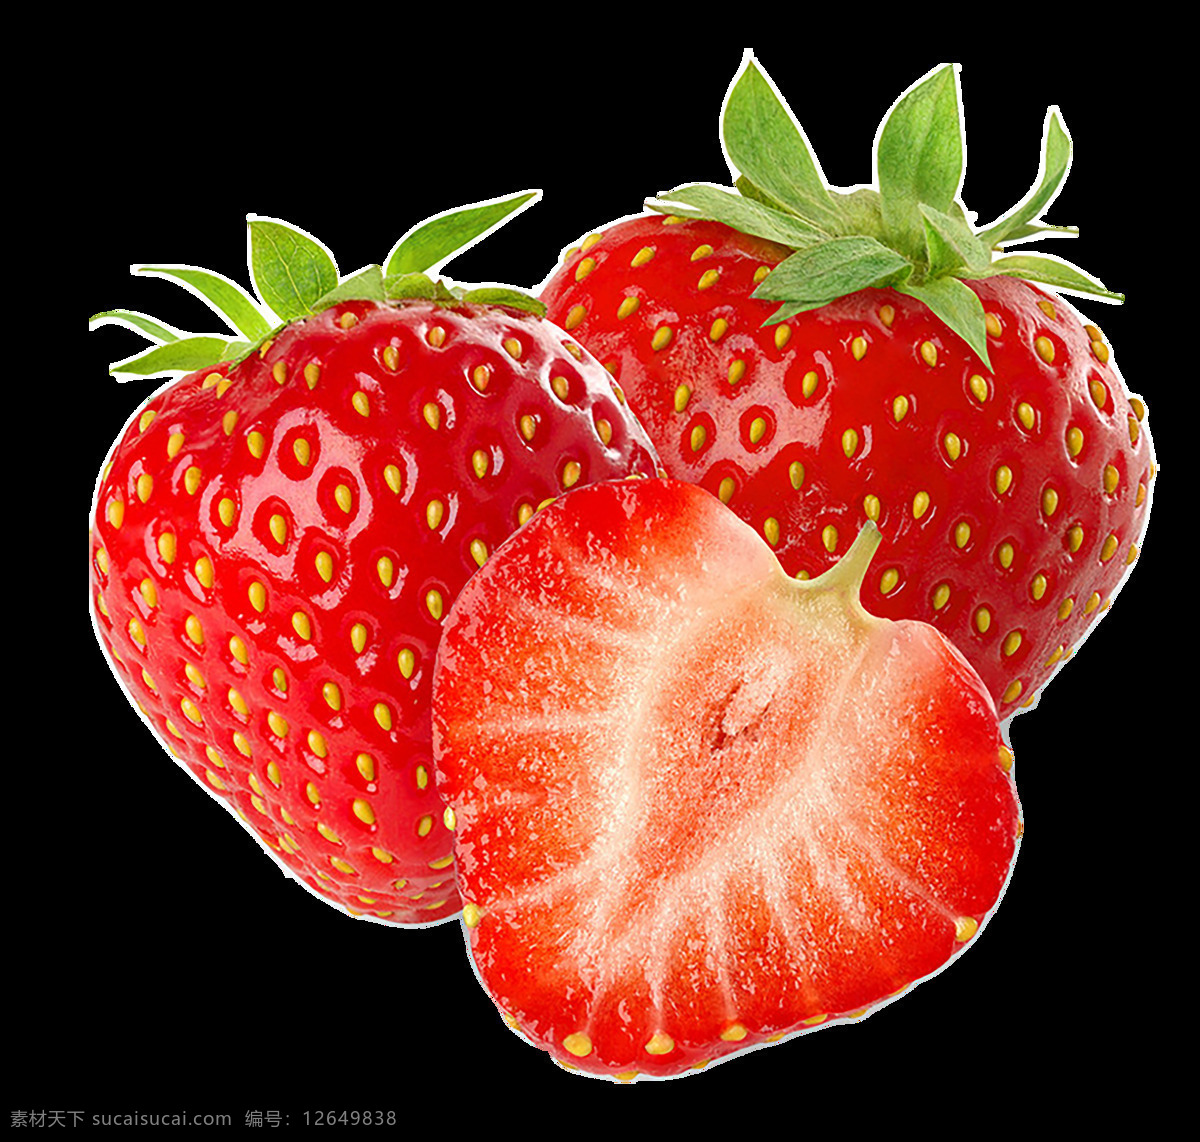 透明 免 抠 图 草莓 免抠图草莓 透明草莓 草莓素材 草莓图片 新鲜草莓 水果蔬菜